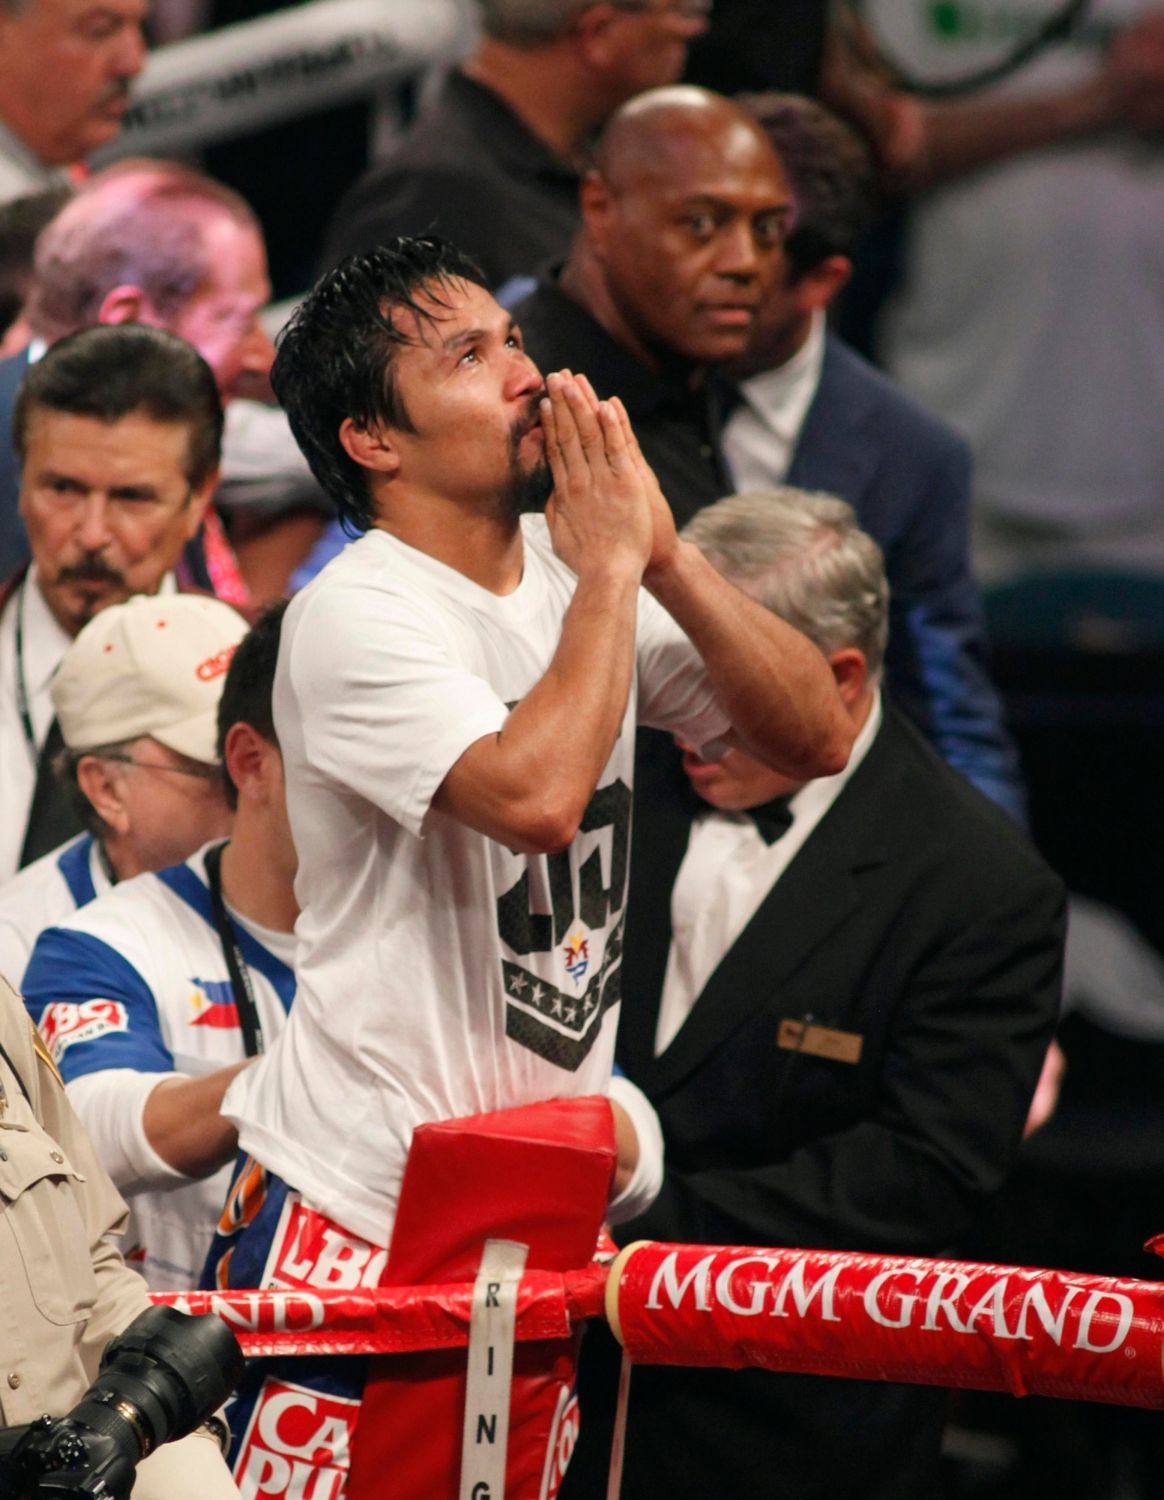 Manny Pacquiao v souboji welterova váhy o titul mistra světa WBO